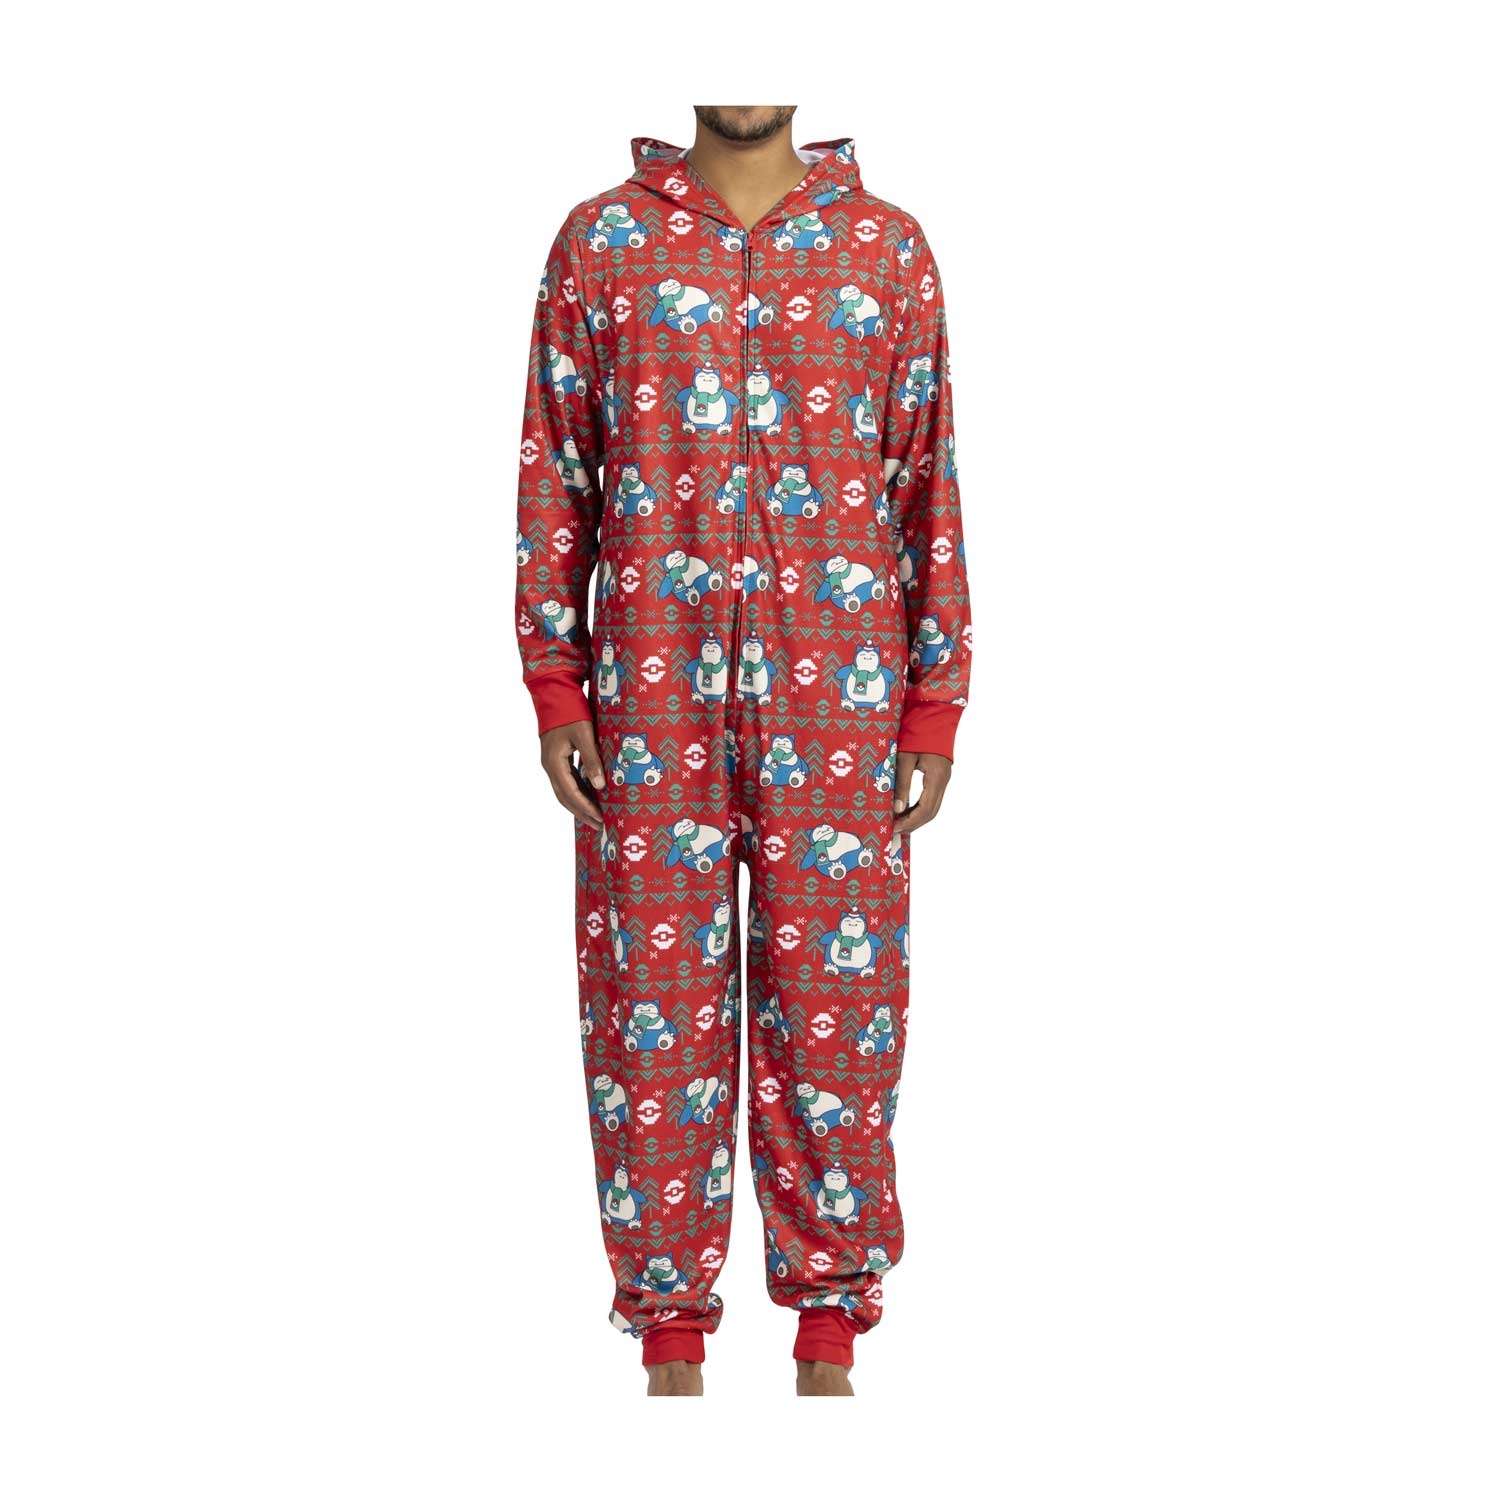 Snorlax pajama onesie